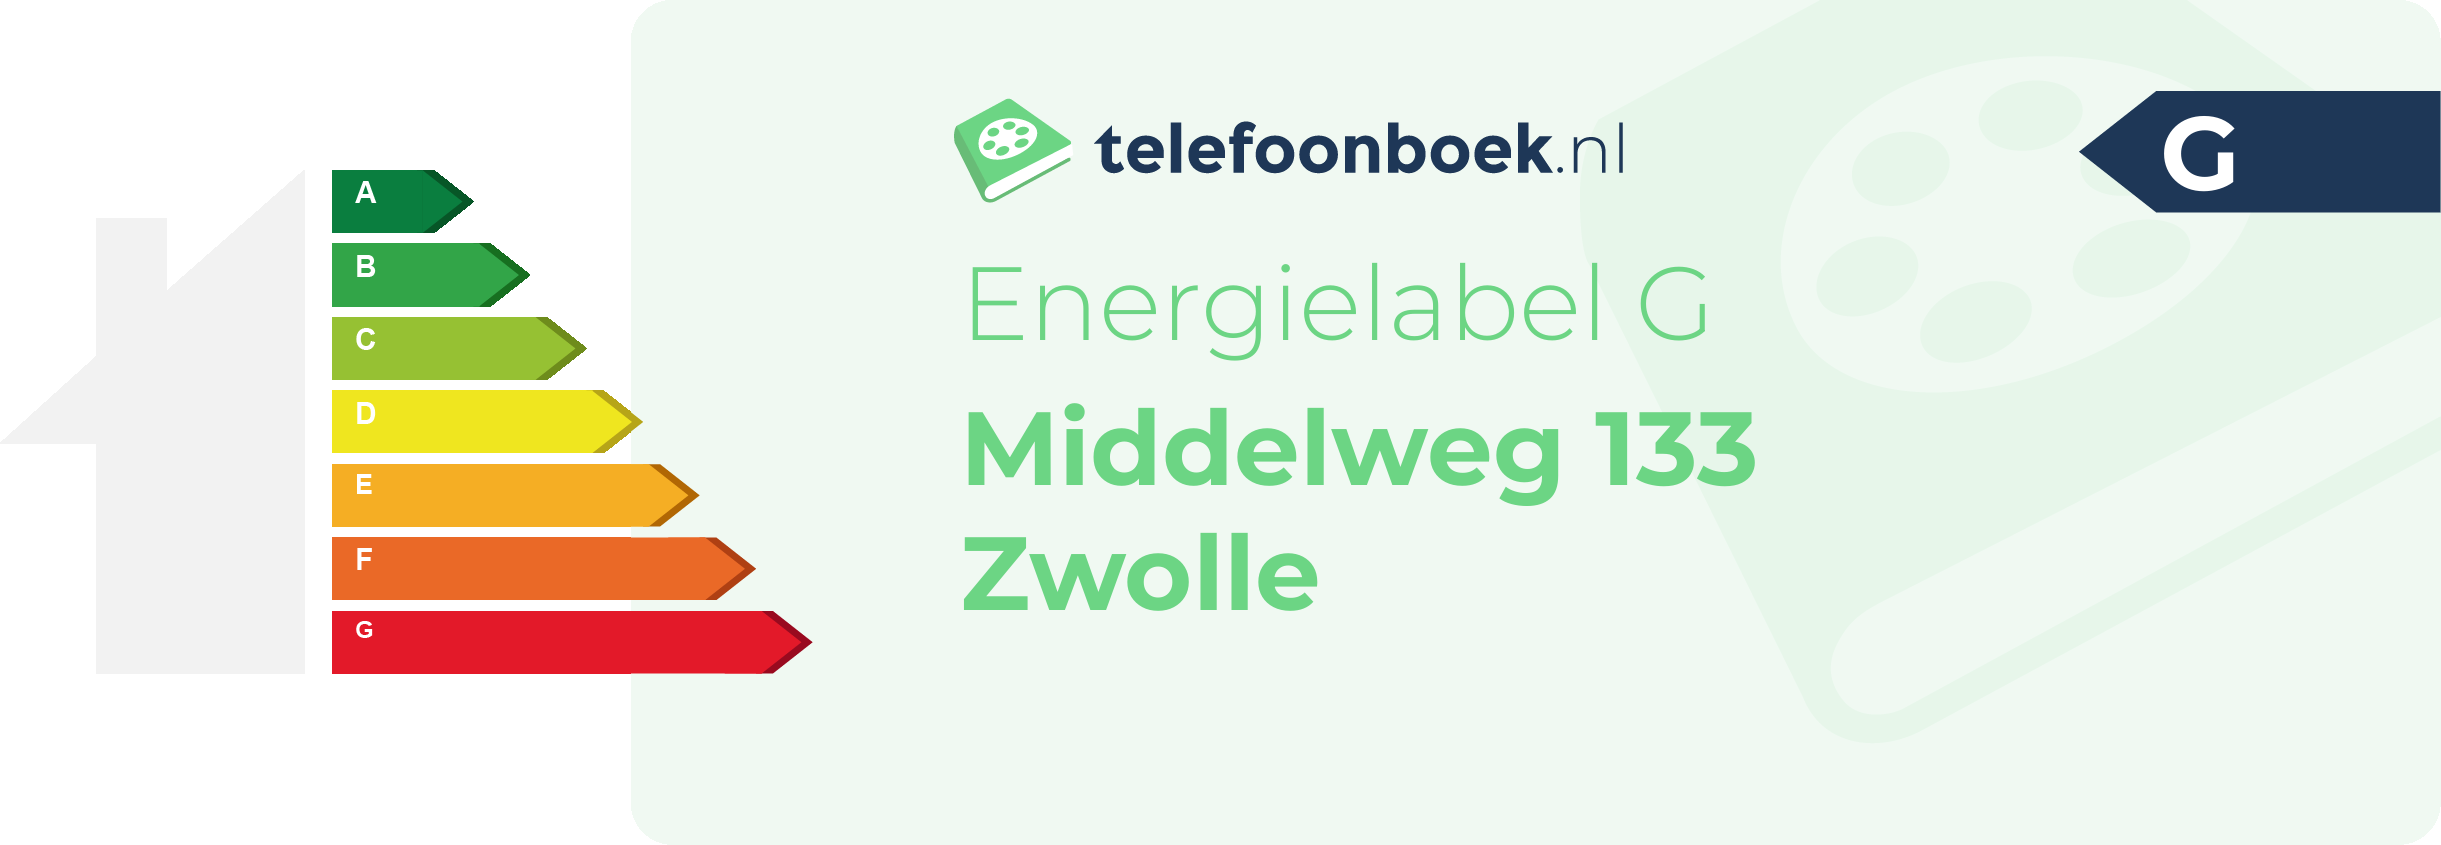 Energielabel Middelweg 133 Zwolle